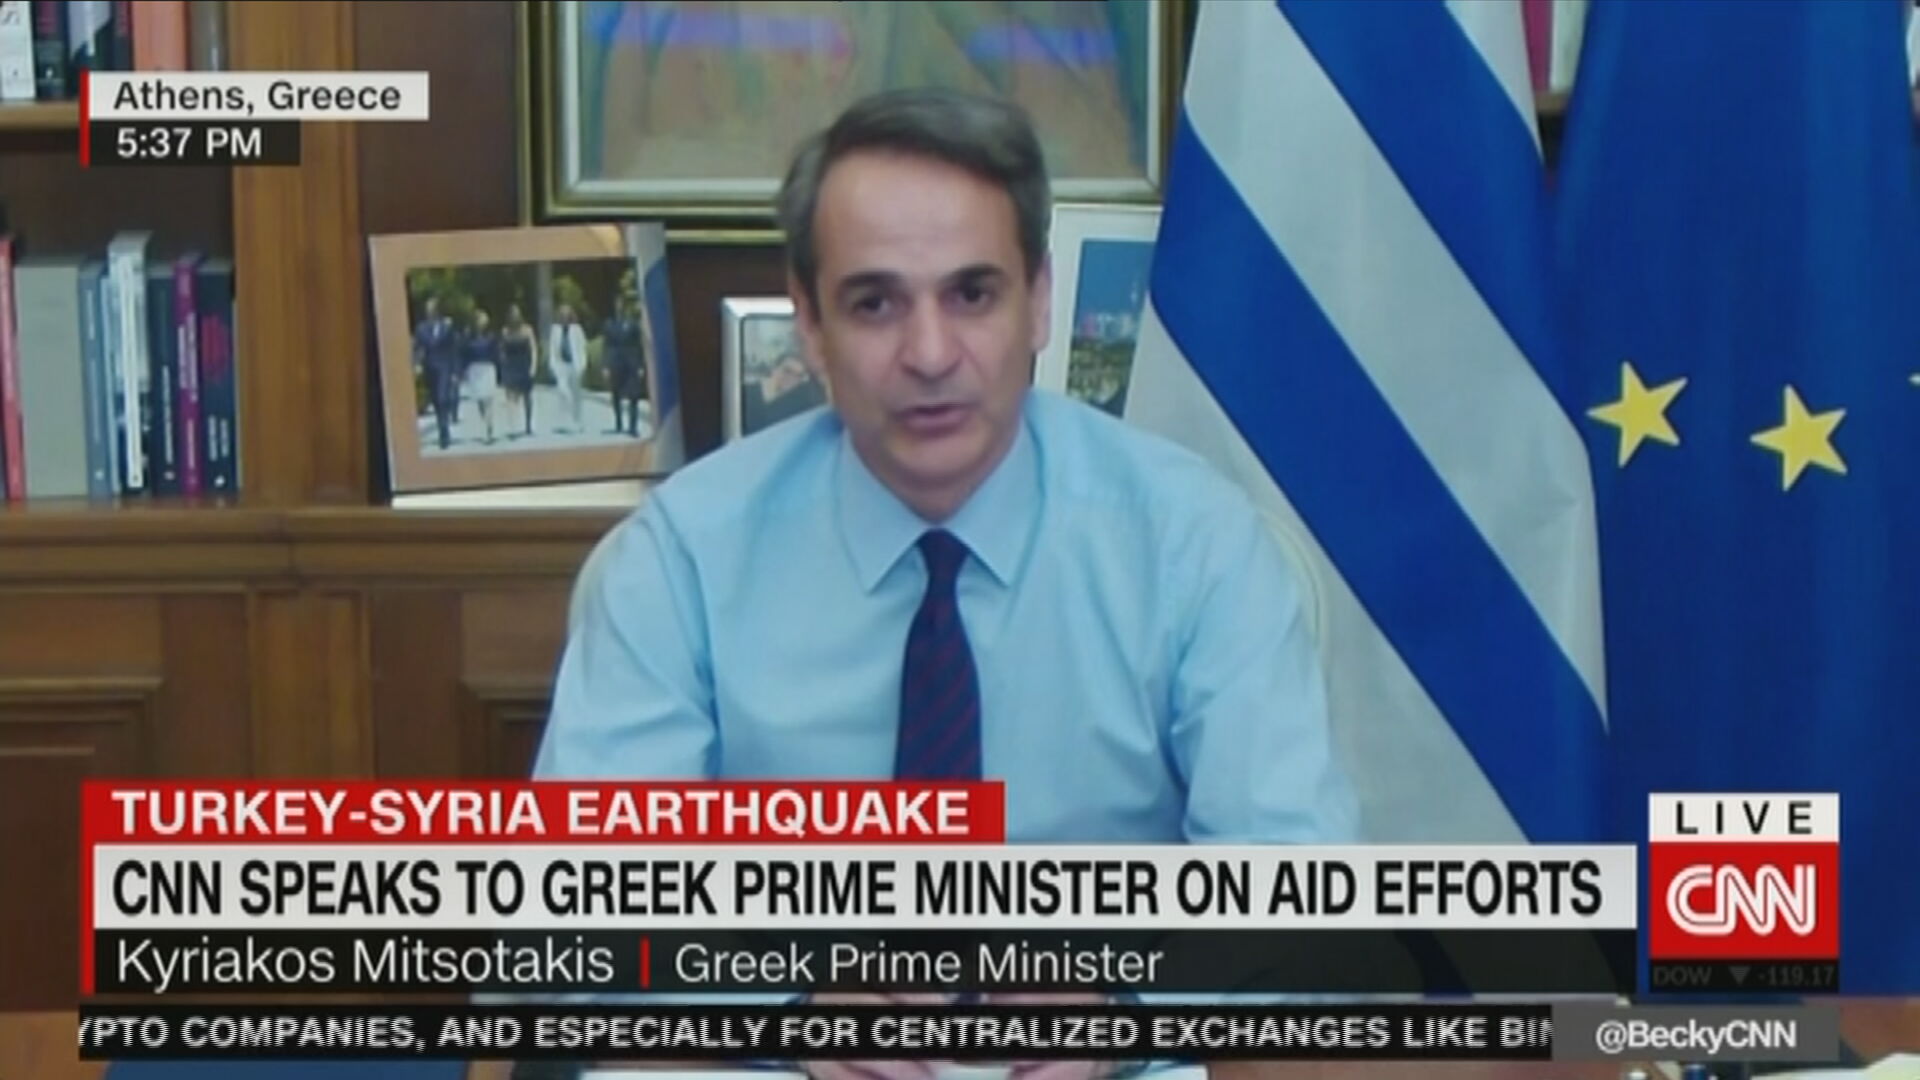 Μητσοτάκης στο CNN για τον σεισμό στην Τουρκία: Από τις πρώτες χώρες η Ελλάδα που ανταποκρίθηκε στο αίτημα – Βρισκόμαστε εκεί επί τόπου (video)